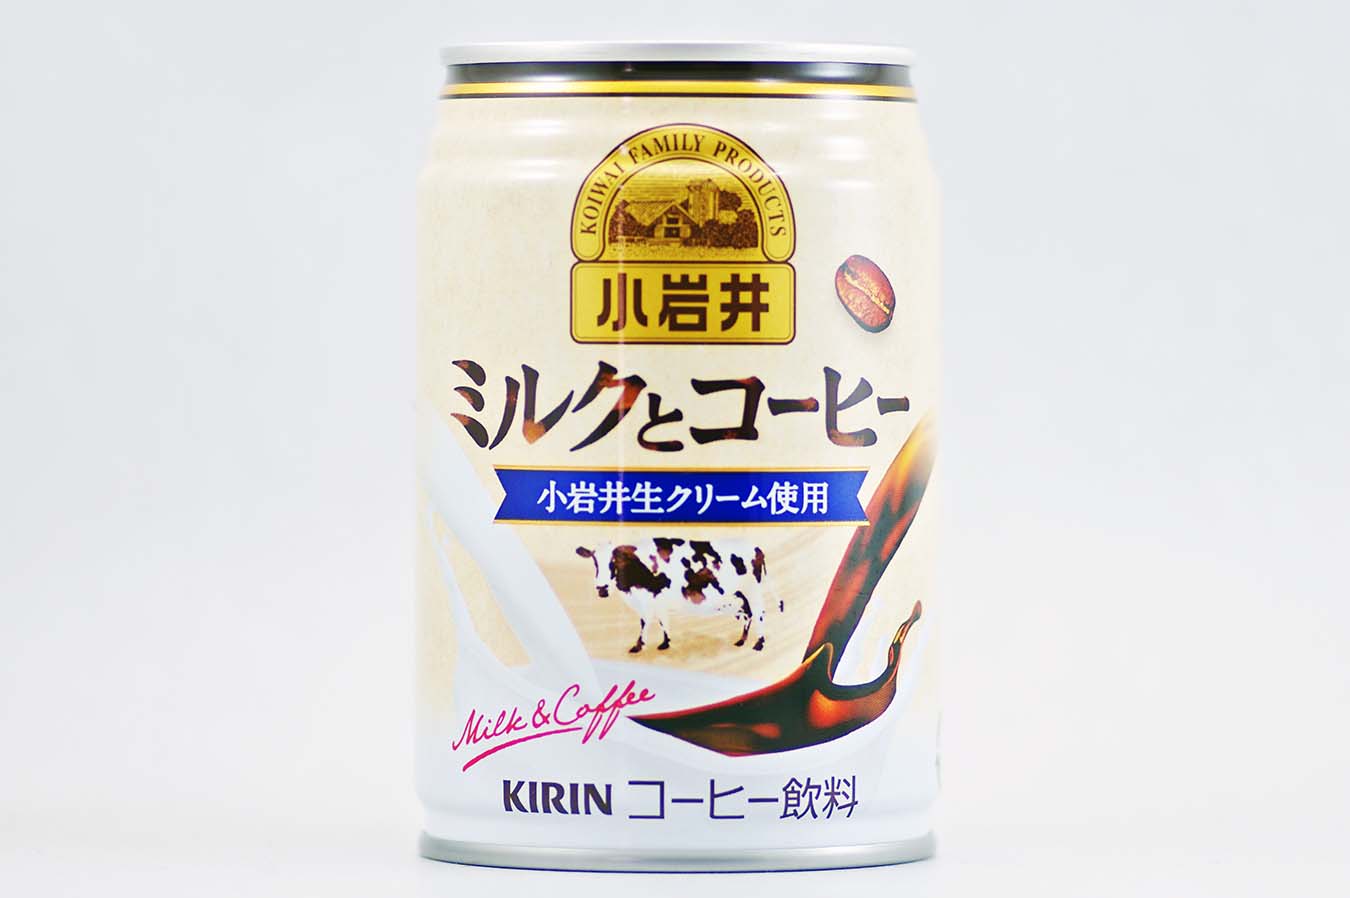 小岩井 ミルクとコーヒー 2015年6月